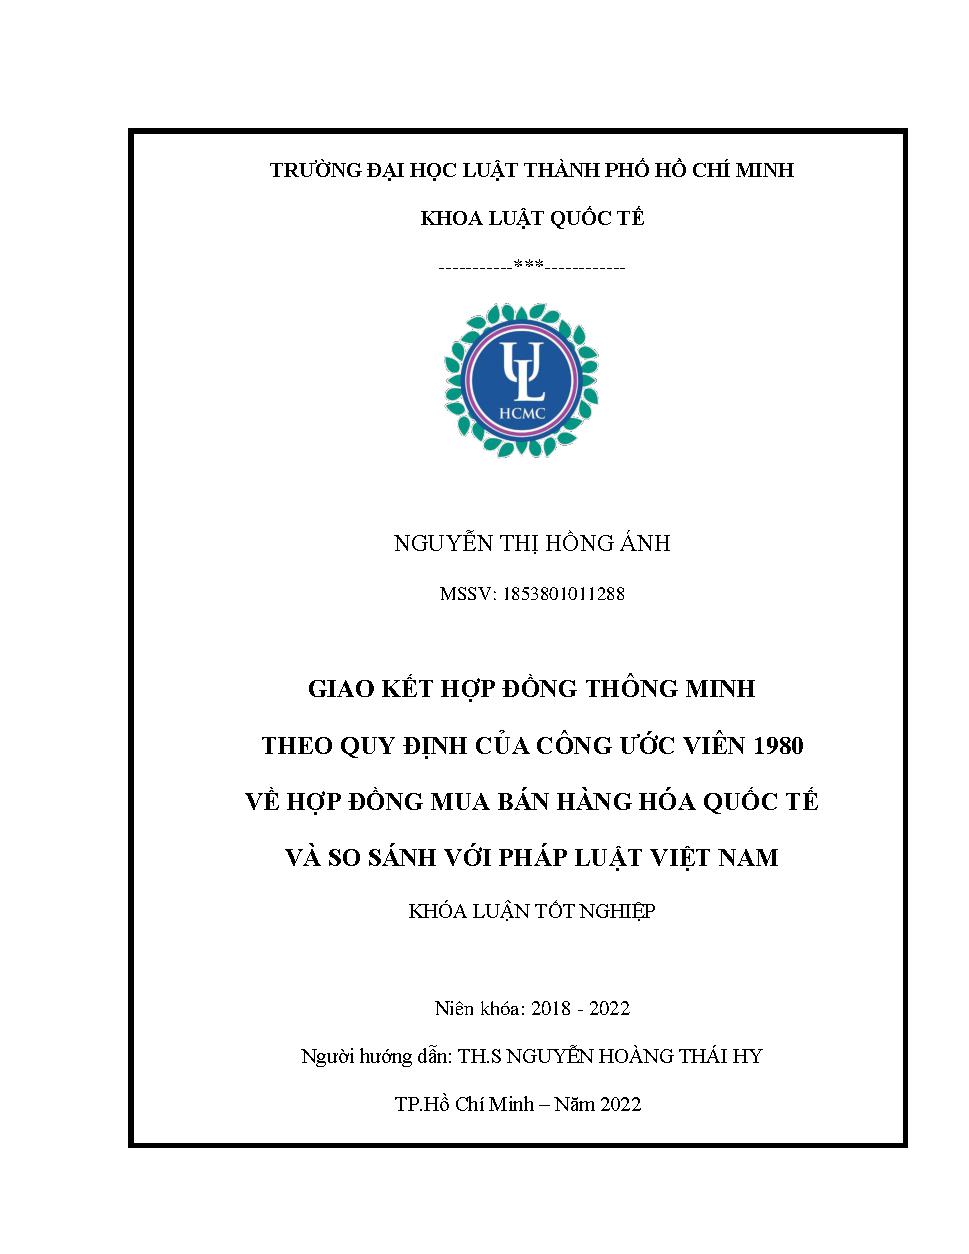 Giao kết hợp đồng thông minh theo quy định của công ước viên 1980 về hợp đồng mua bán hàng hóa quốc tế và so sánh với pháp luật Việt Nam